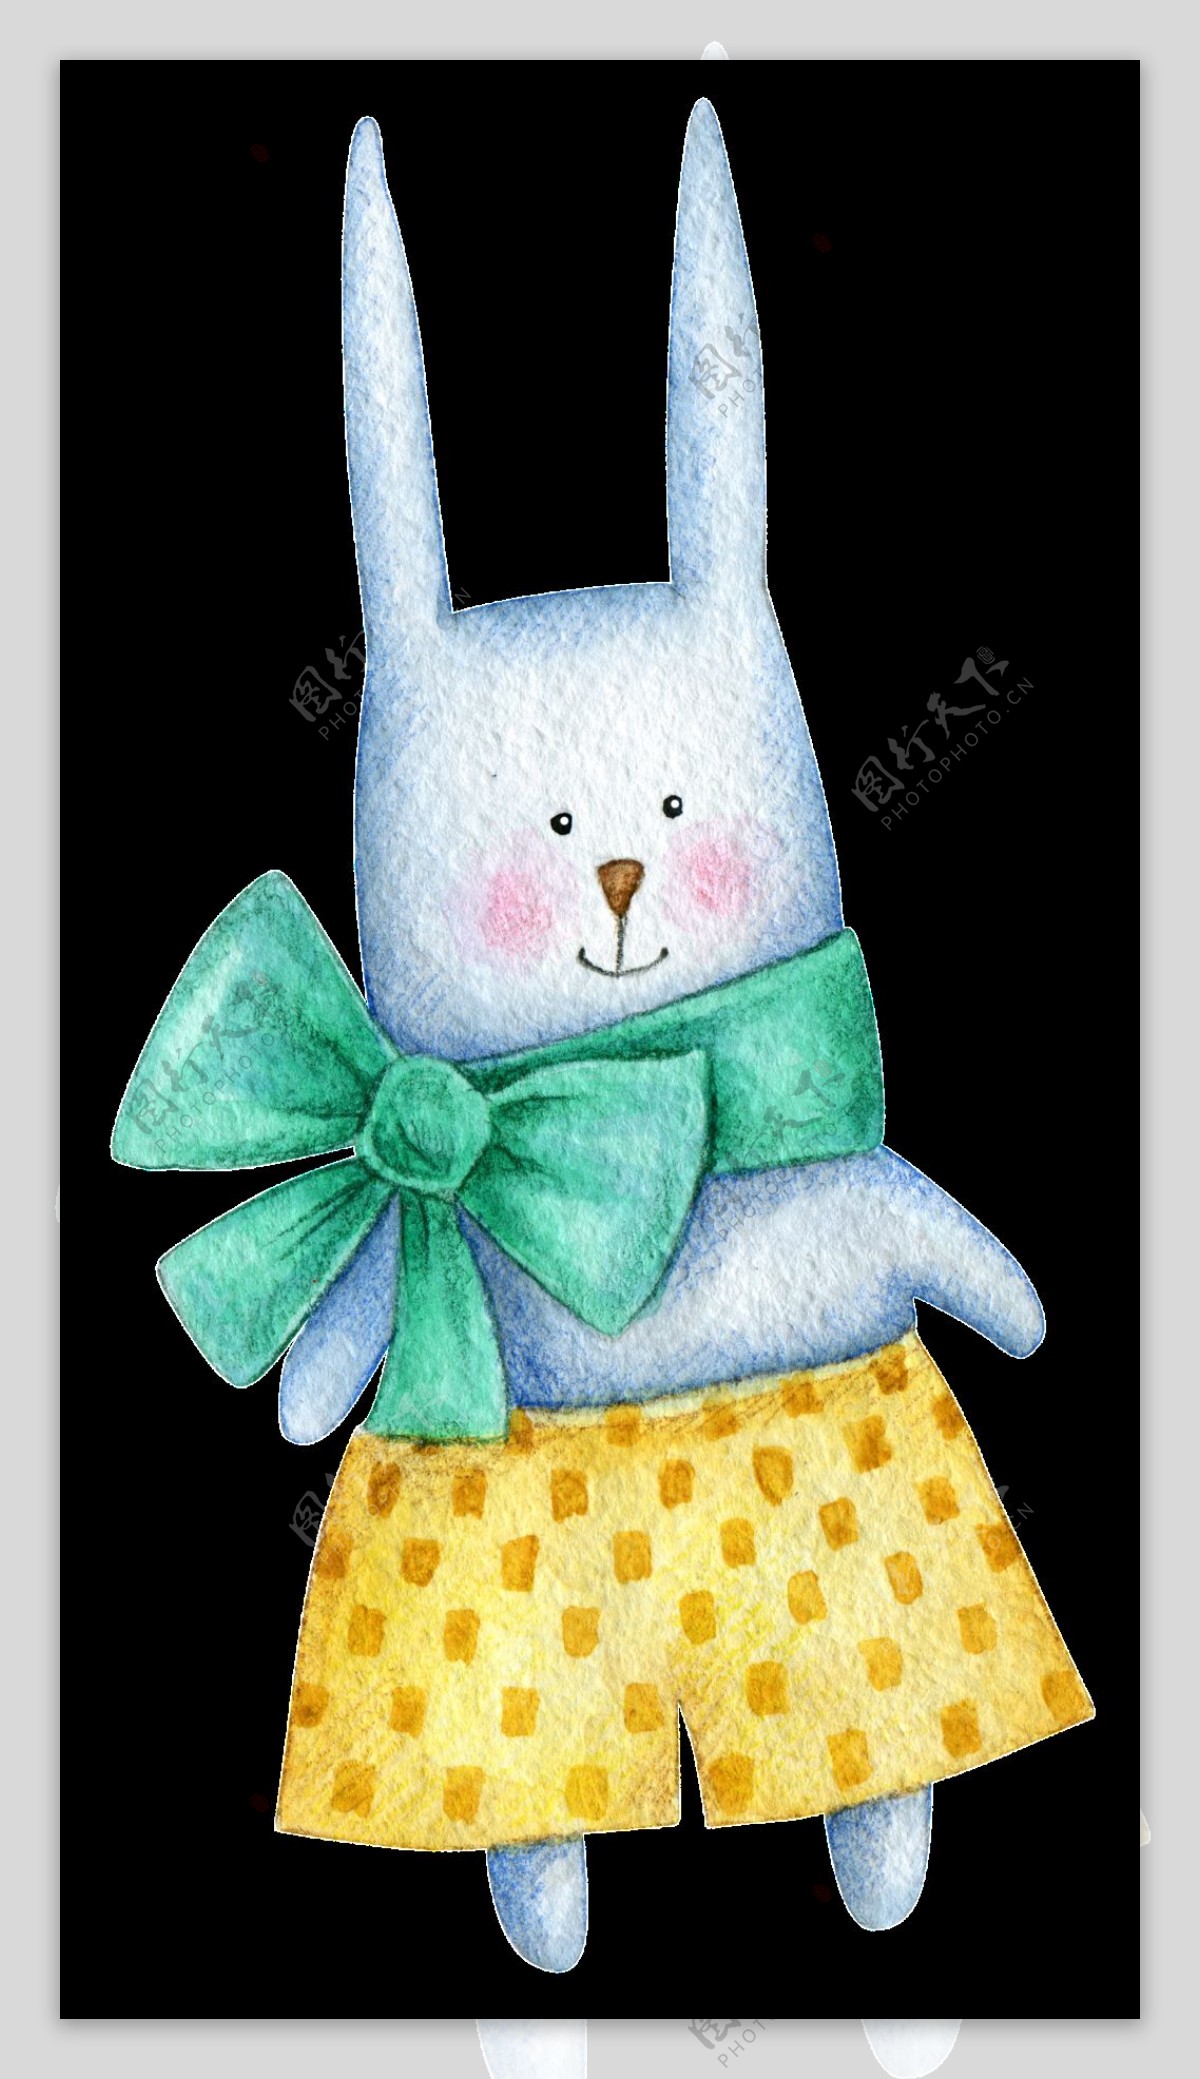 手绘俏皮兔子透明装饰图案